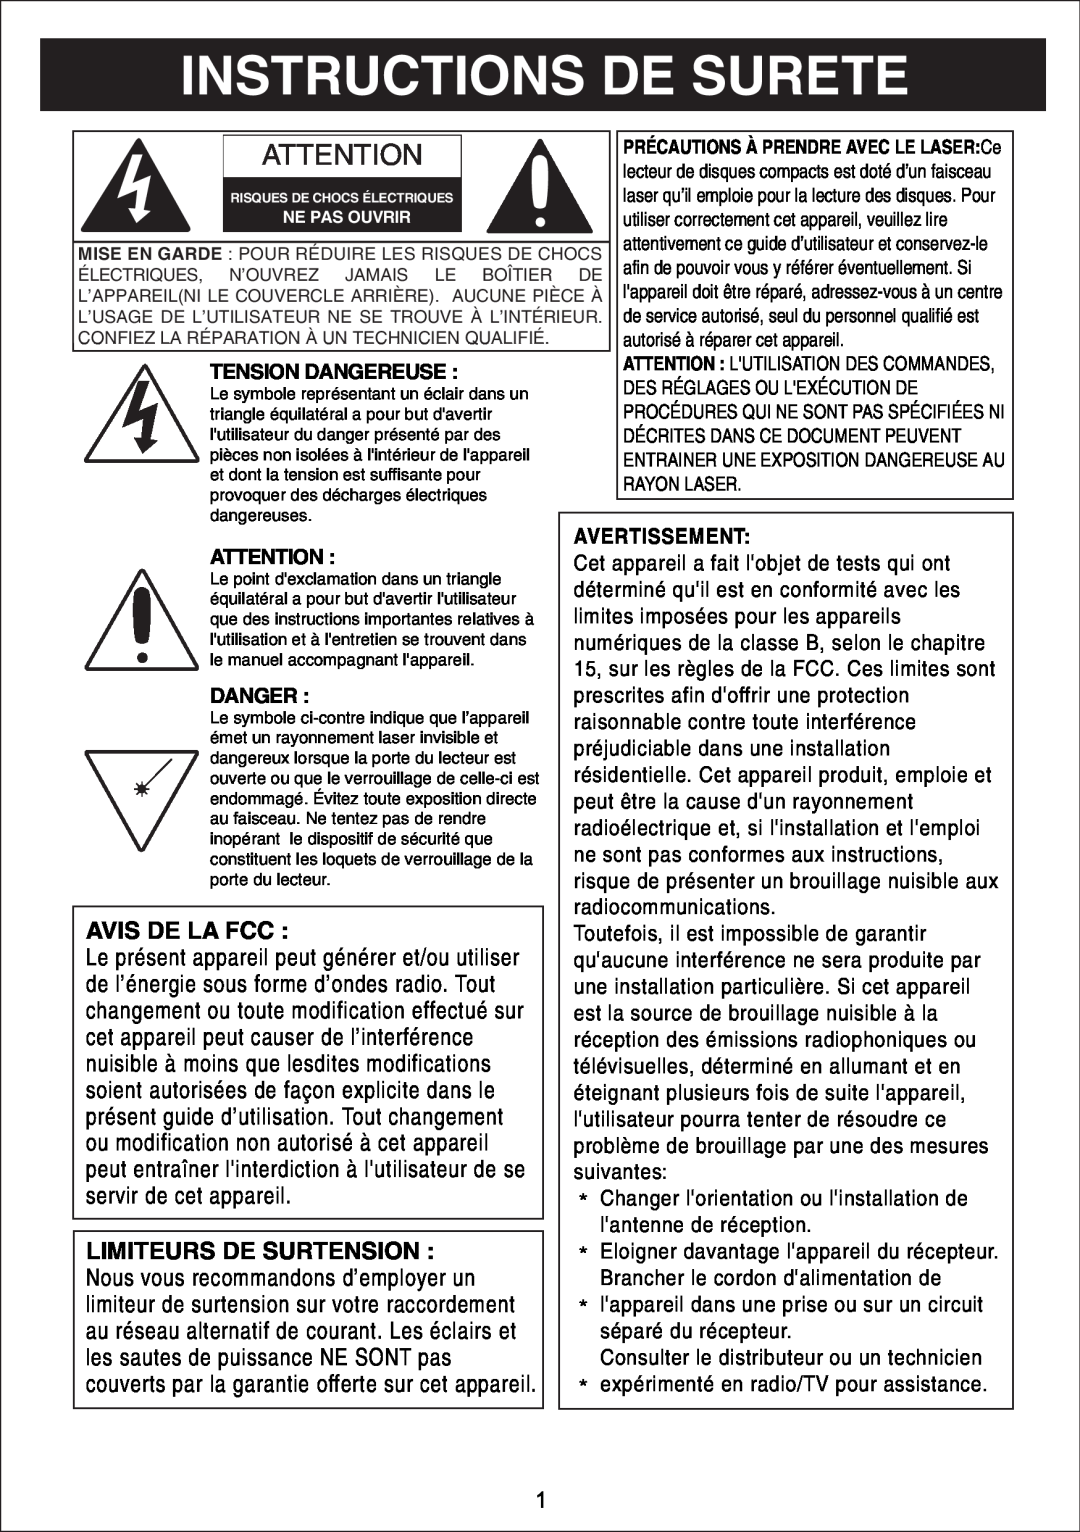 Sylvania SIP3019 Instructions De Surete, Avis De La Fcc, cet appareil peut causer de l’interférence, Tension Dangereuse 